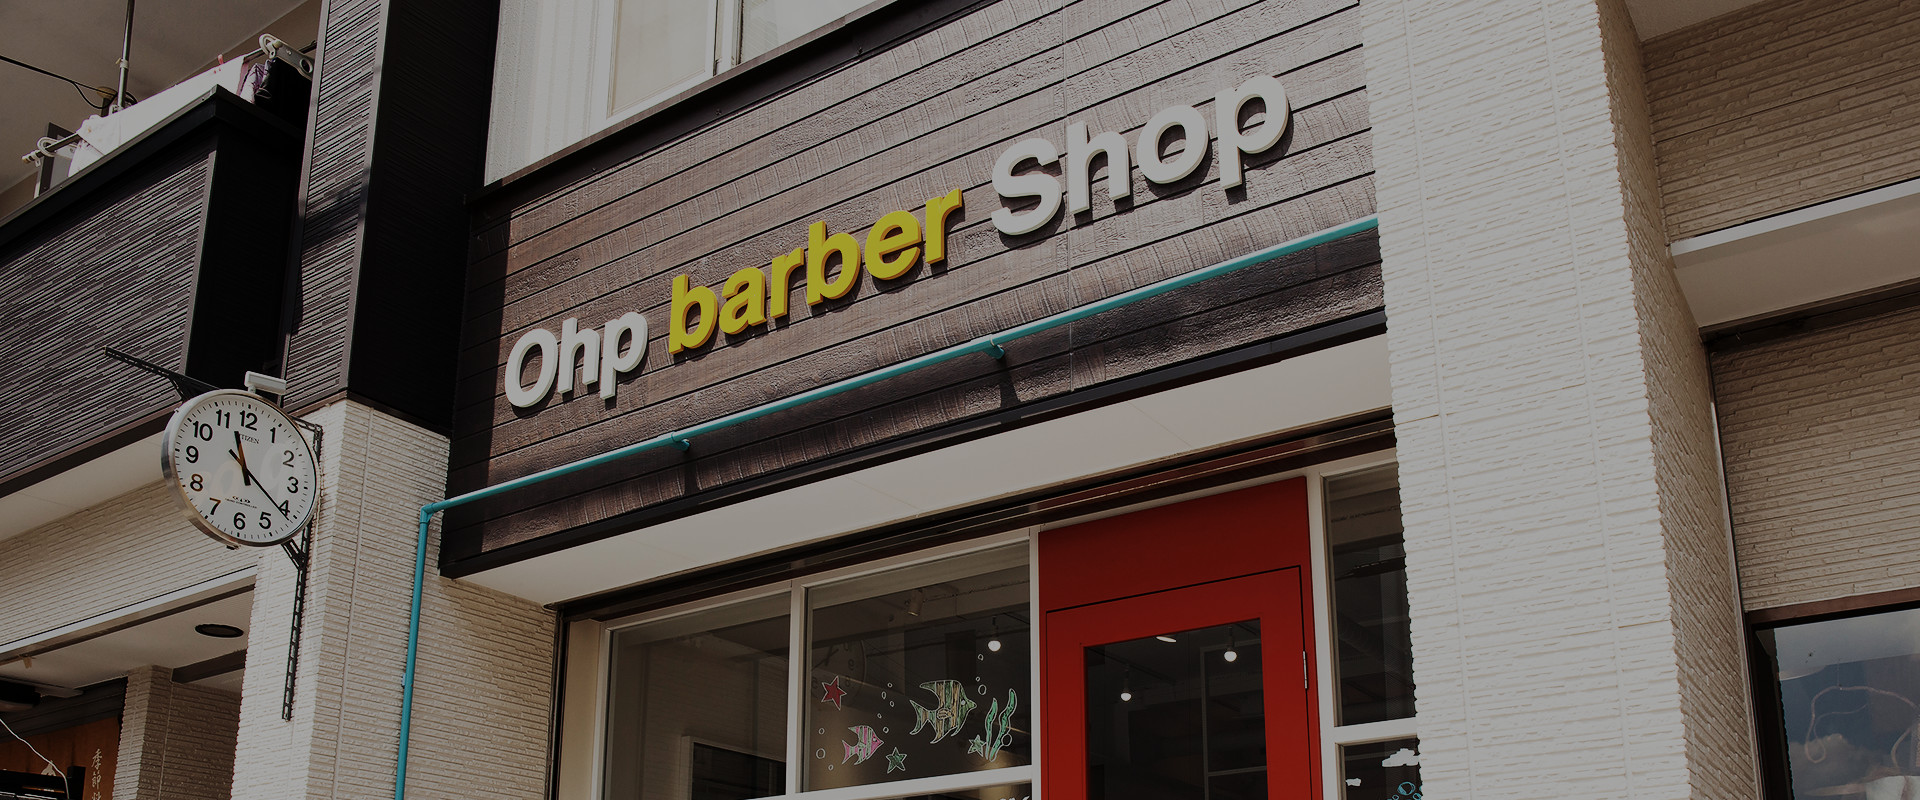 Ohp barber Shop